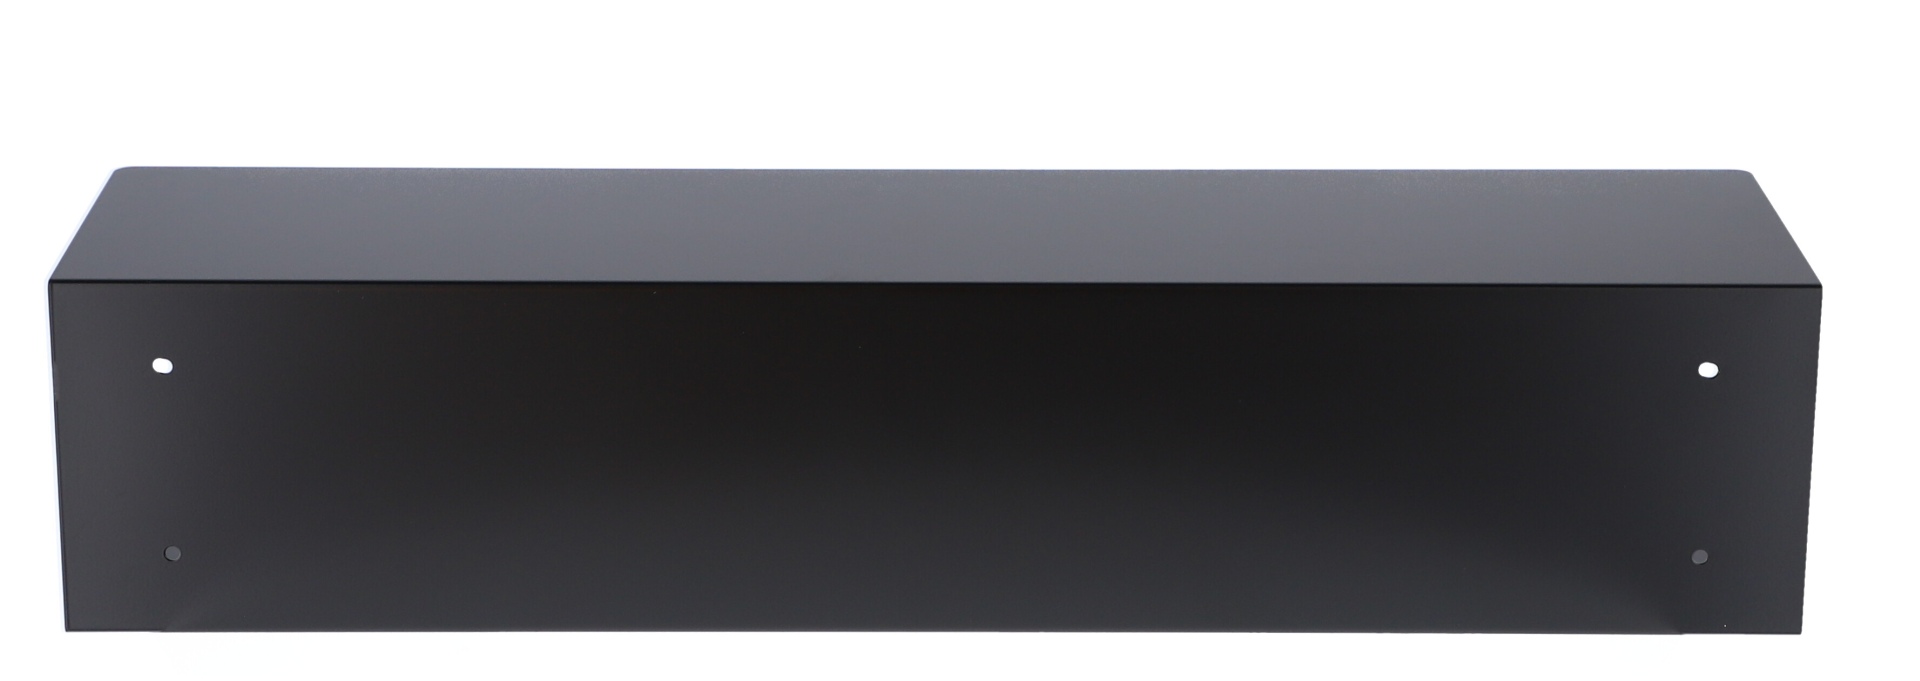 Das Schuhregal Fritz wurde aus Metall gefertigt und hat einen schwarzen Farbton. Die Breite beträgt 80 cm. Das Design ist schlicht aber auch modern. Das Regal ist ein Produkt der Marke Jan Kurtz.